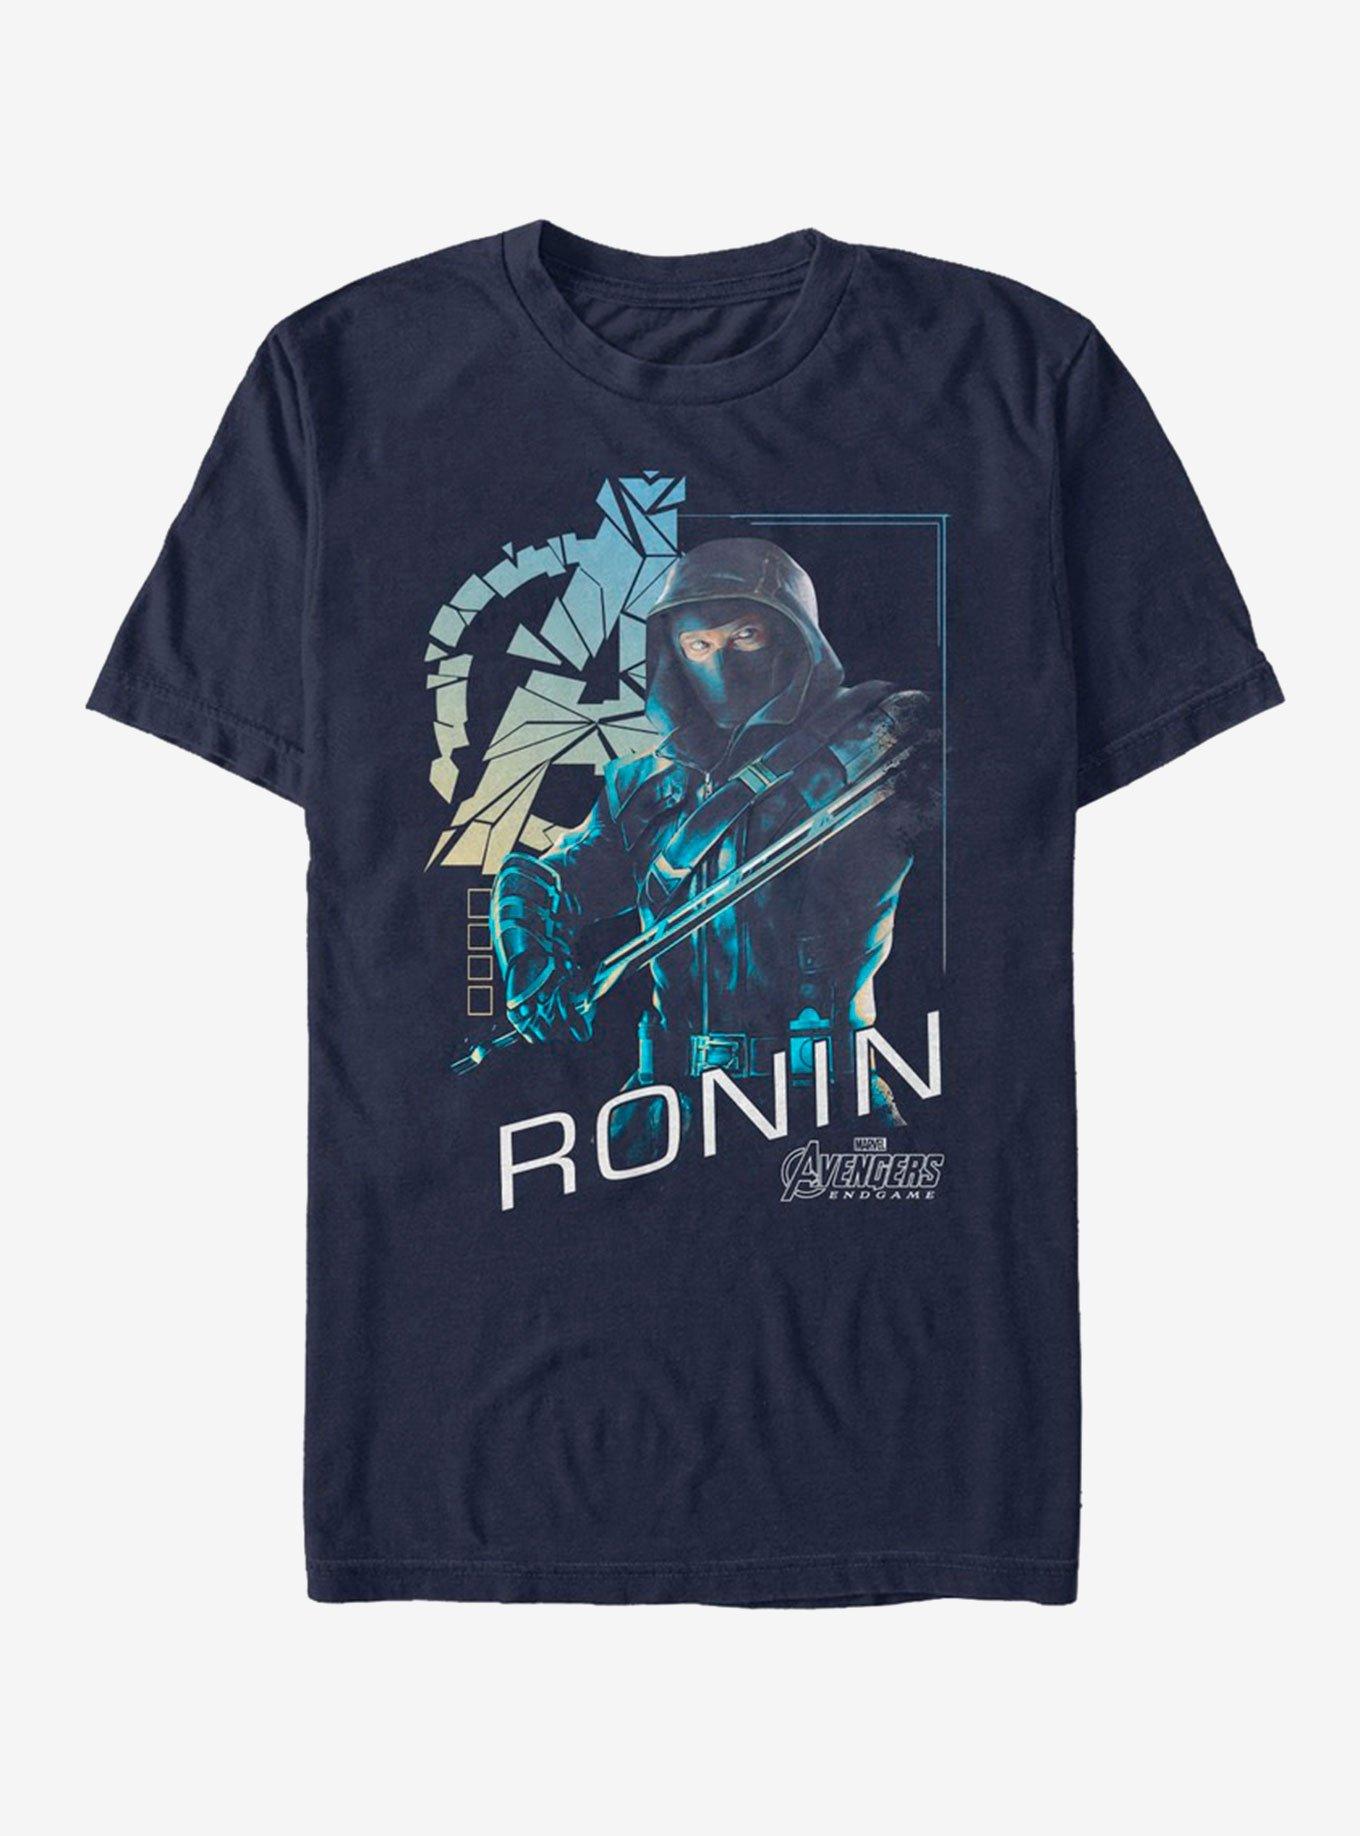 Marvel Avengers Endgame Ronin Hero T-Shirt